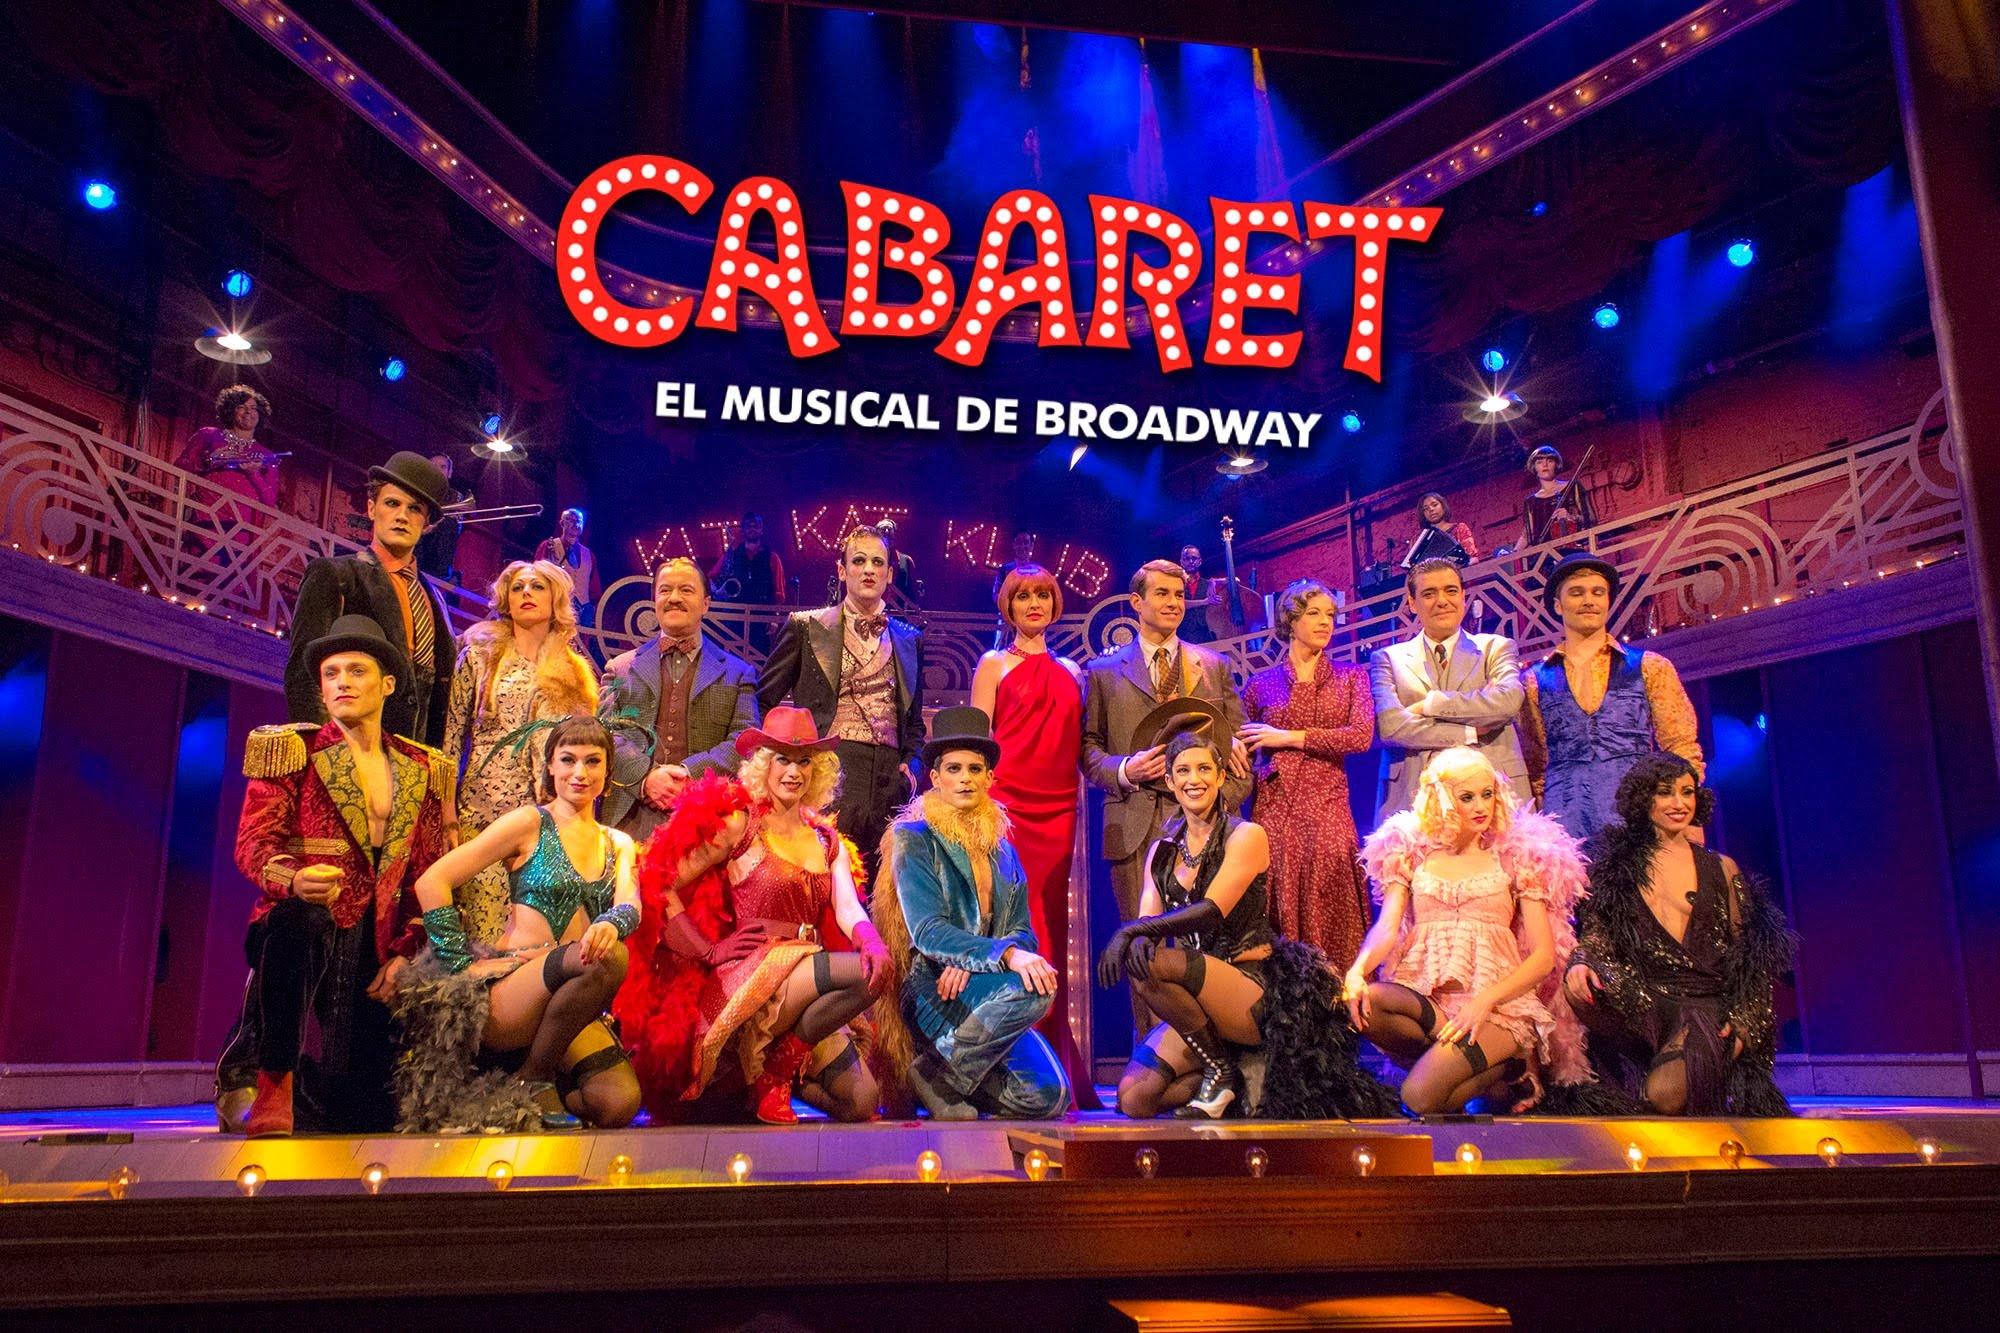 Cabaret: Broadway musical, Entertainment featuring music, song, dance. 2000x1340 HD Wallpaper.